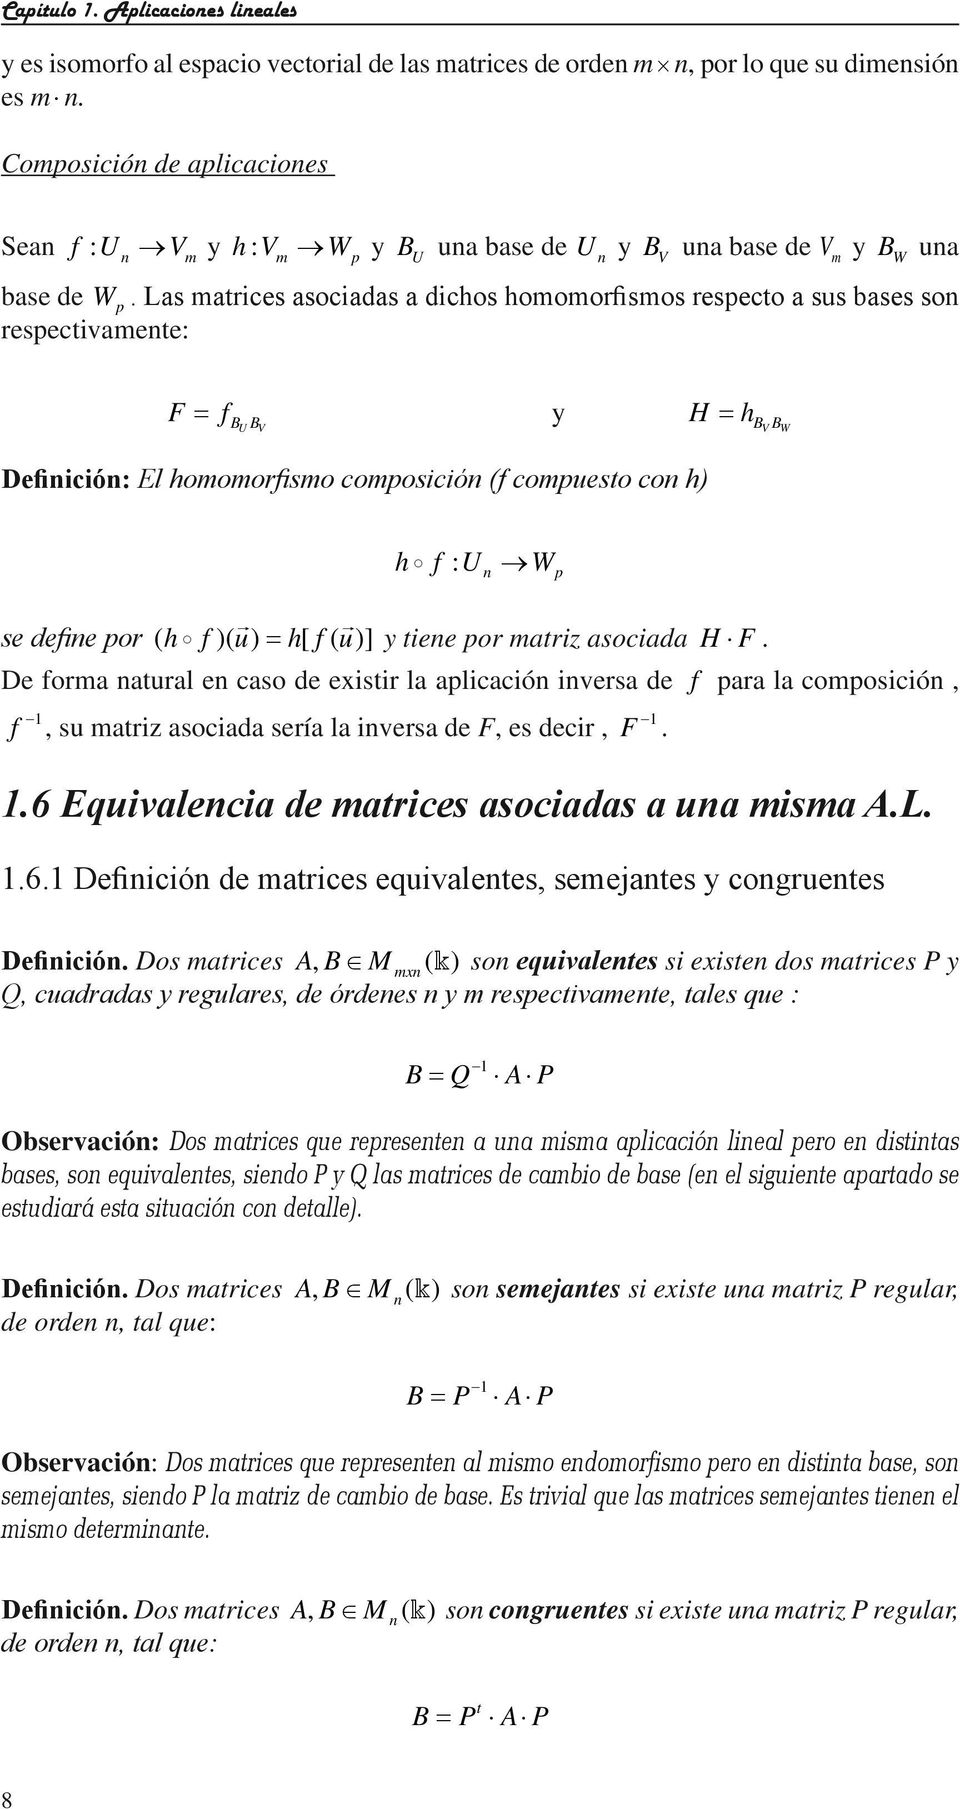 Las matrices asociadas a dichos homomorfismos respecto a sus bases so respectivamete: F f B B = y H = h U V B B V W Defiició: El homomorfismo composició (f compuesto co h) h f U W : p se defie por (